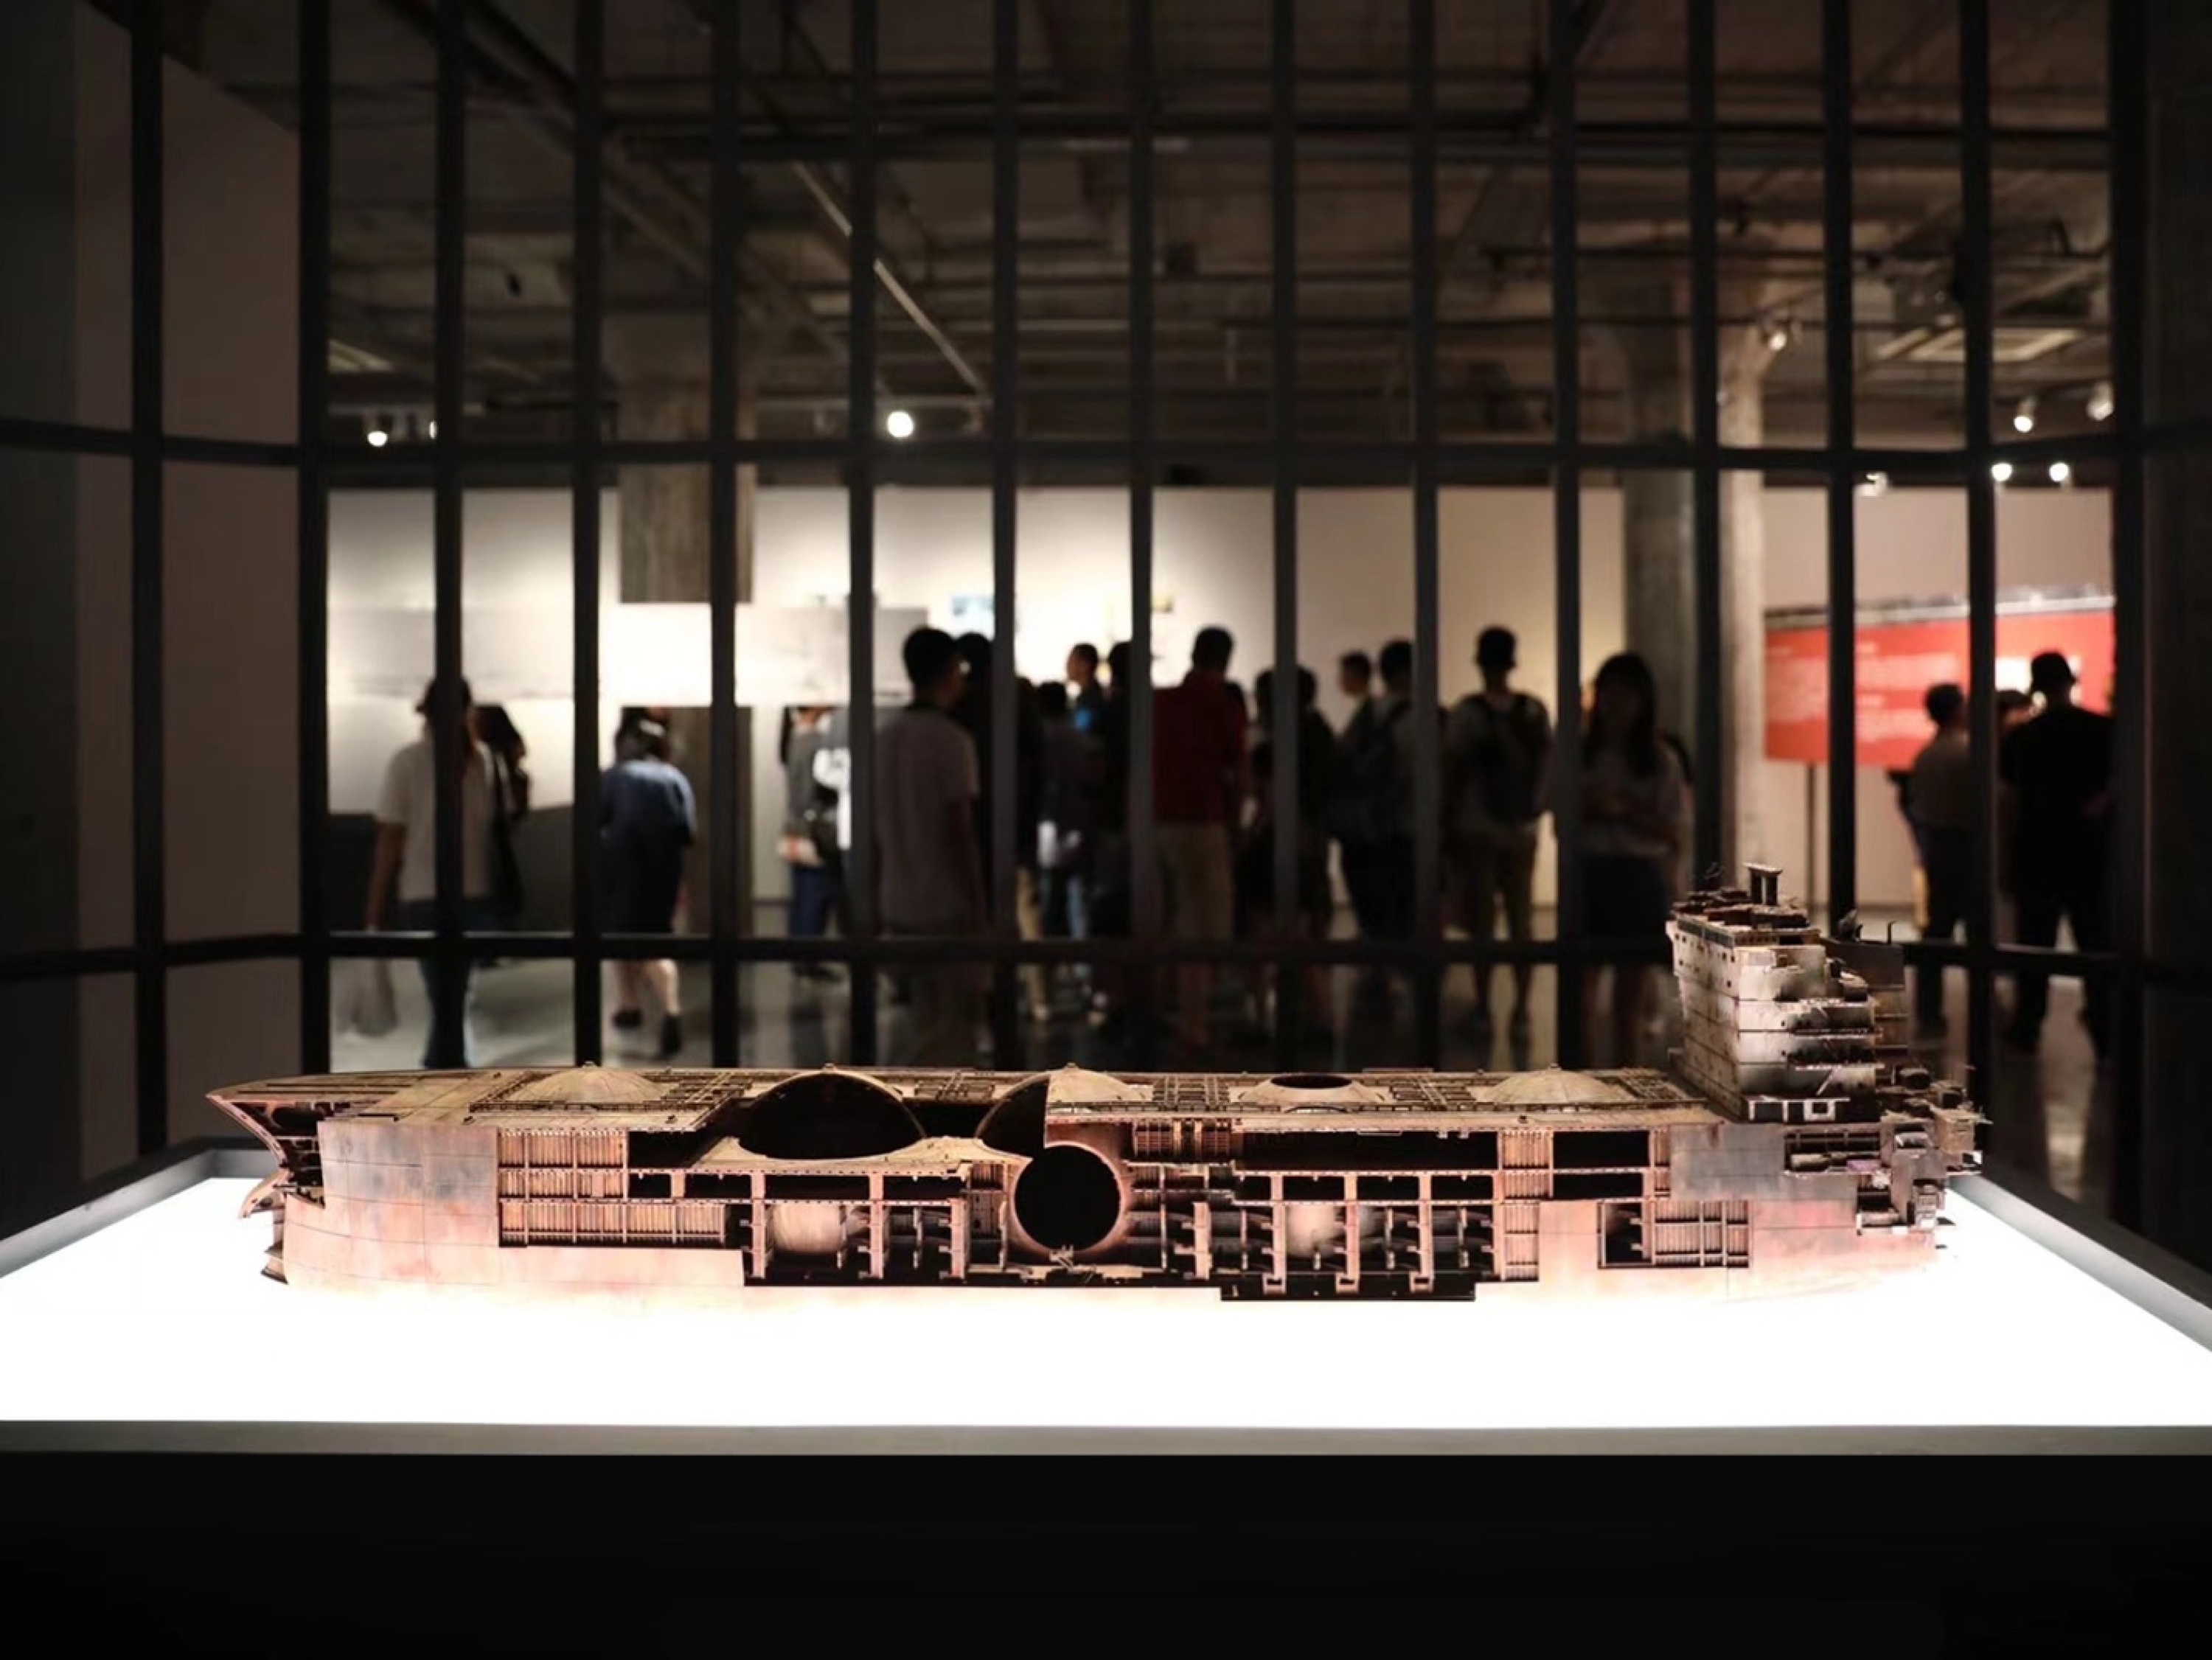 王子耕作品《レヴィアタン》はOCAT上海館「インフラ大国――共同体ディスクールの空間基盤」展に出展